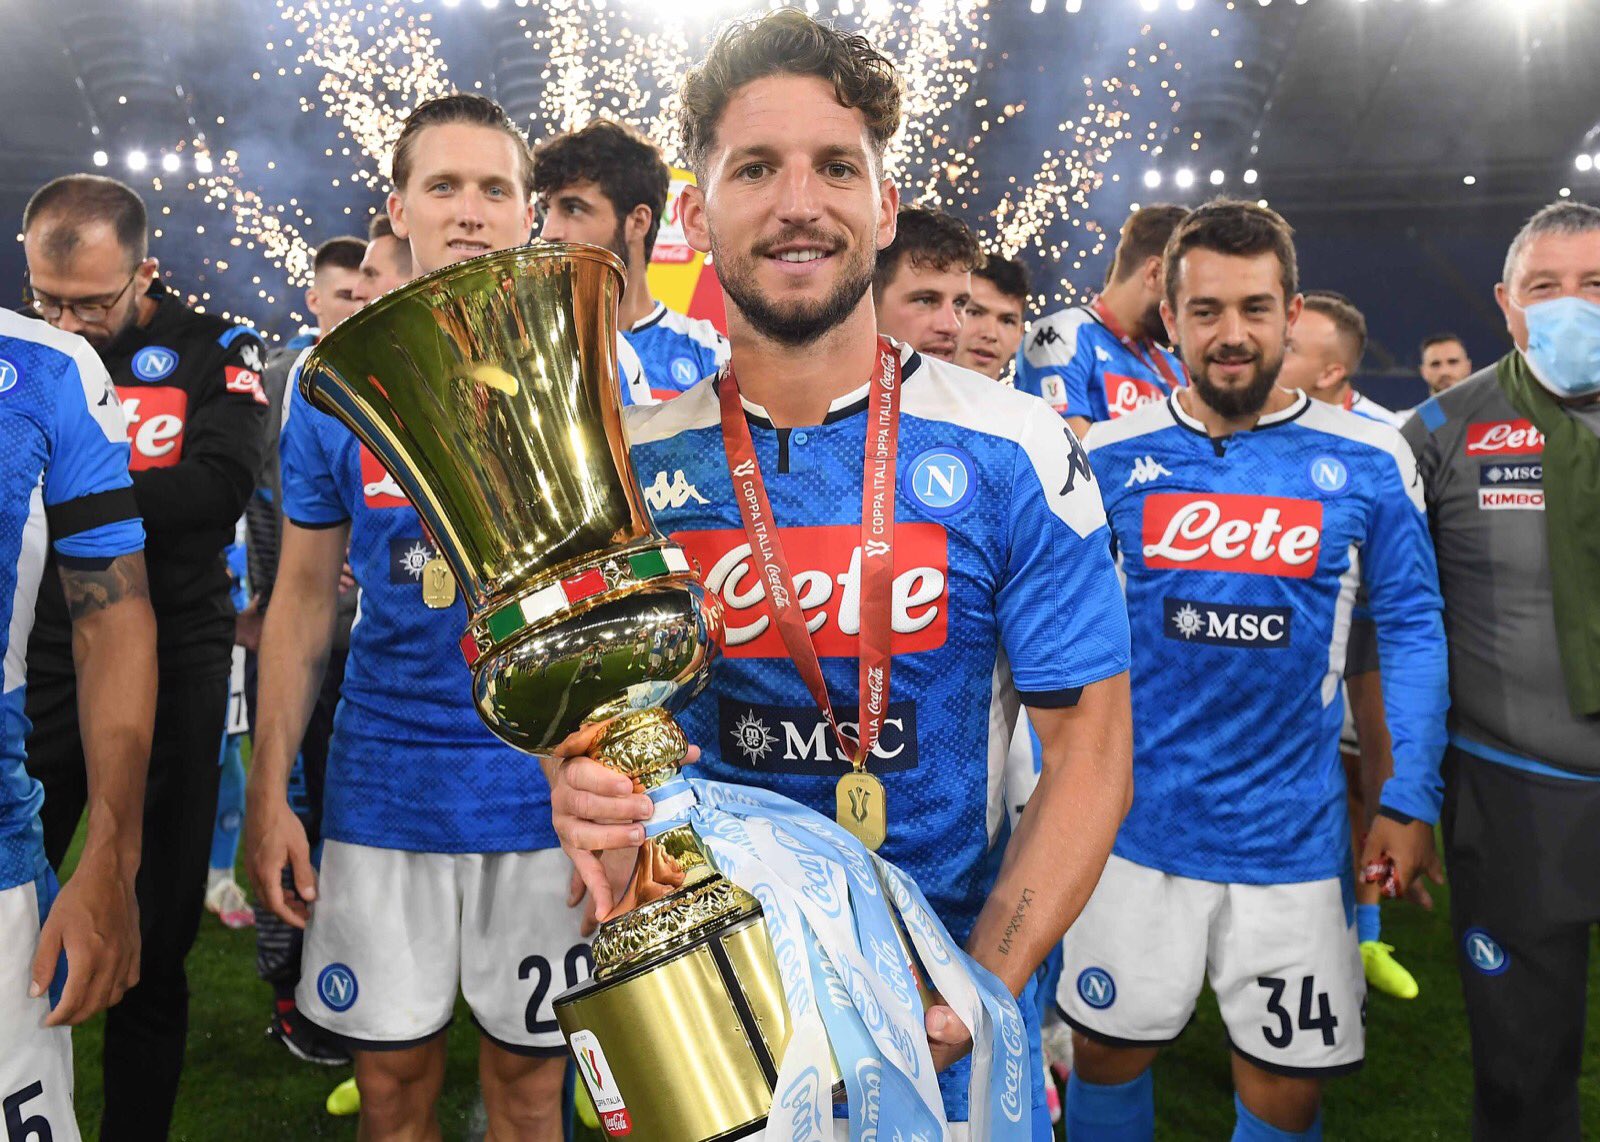 La Panini celebra la vittoria della Coppa Italia del Napoli con una figurina speciale